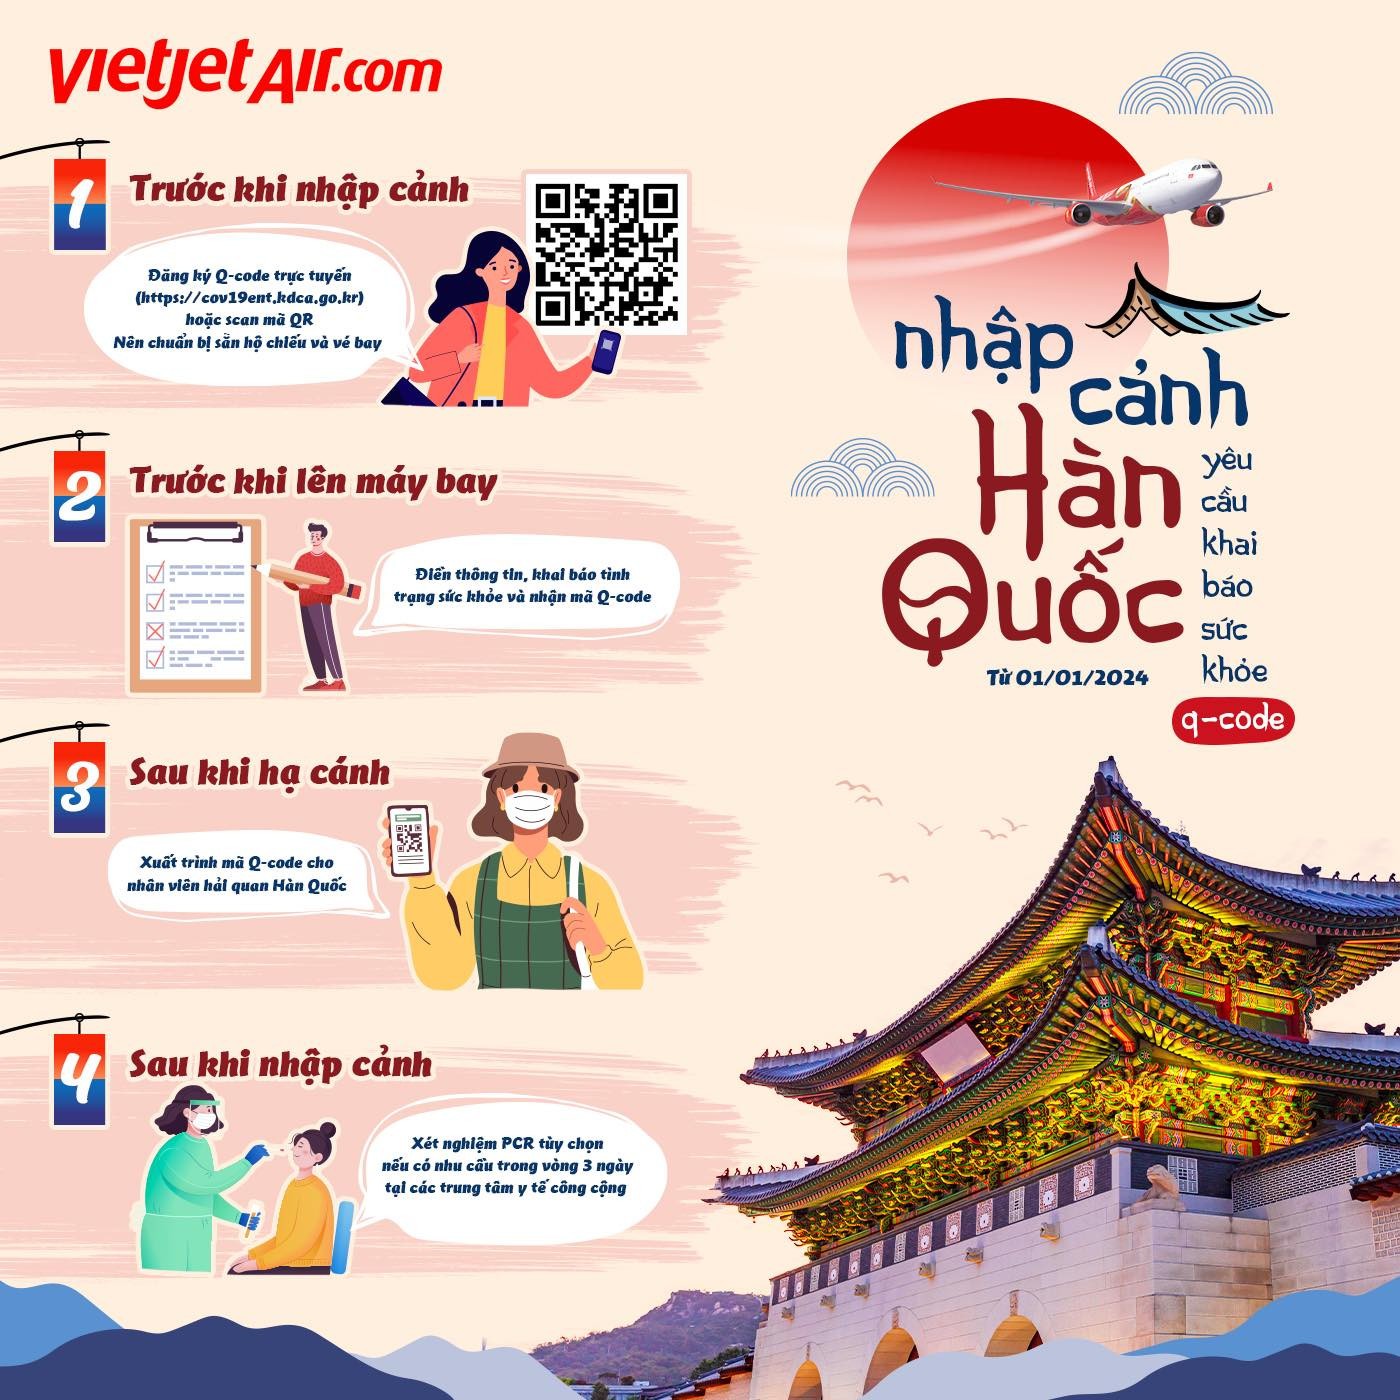 Ghé qua 5 làng tranh tường nổi tiếng hút khách nhất Hàn Quốc - Tugo.com.vn